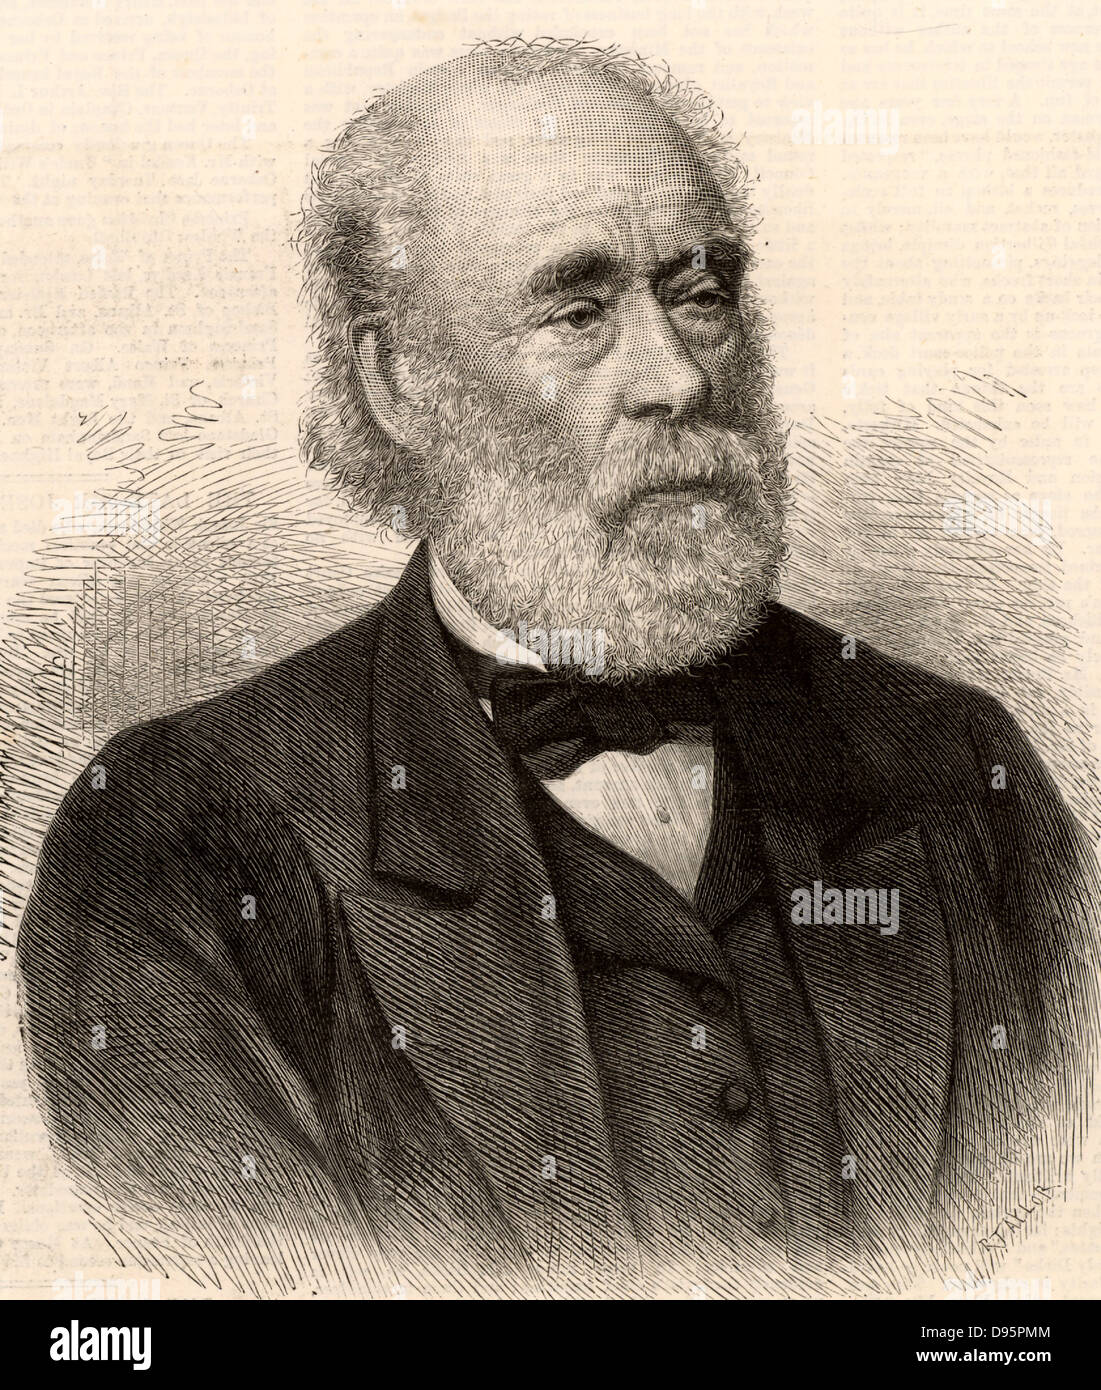 Joseph Whitworth (1803-1887) ingénieur britannique, inventeur et entrepreneur. En 1841, il a présenté un modèle d'un système de vis qui est devenu le standard britannique. Gravure tirée de 'l'Illustrated London News' (Londres, 5 février 1887). Banque D'Images